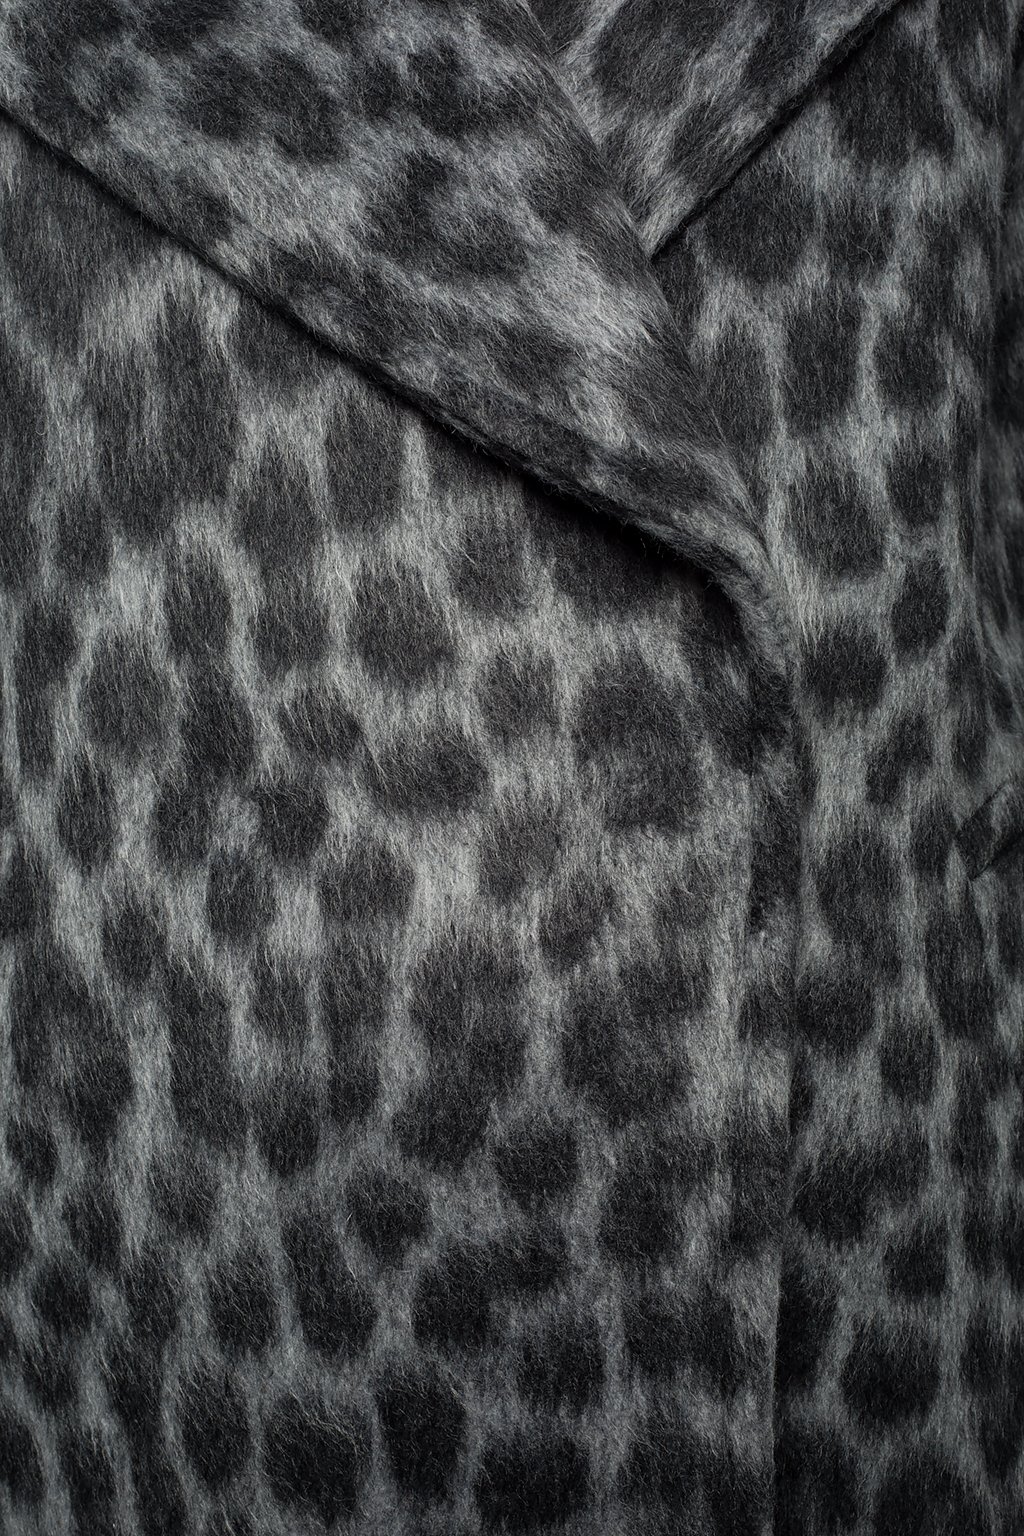 Fur  Shearling Coats Michael Kors  Animal print faux fur Aline coat   77C815M52709